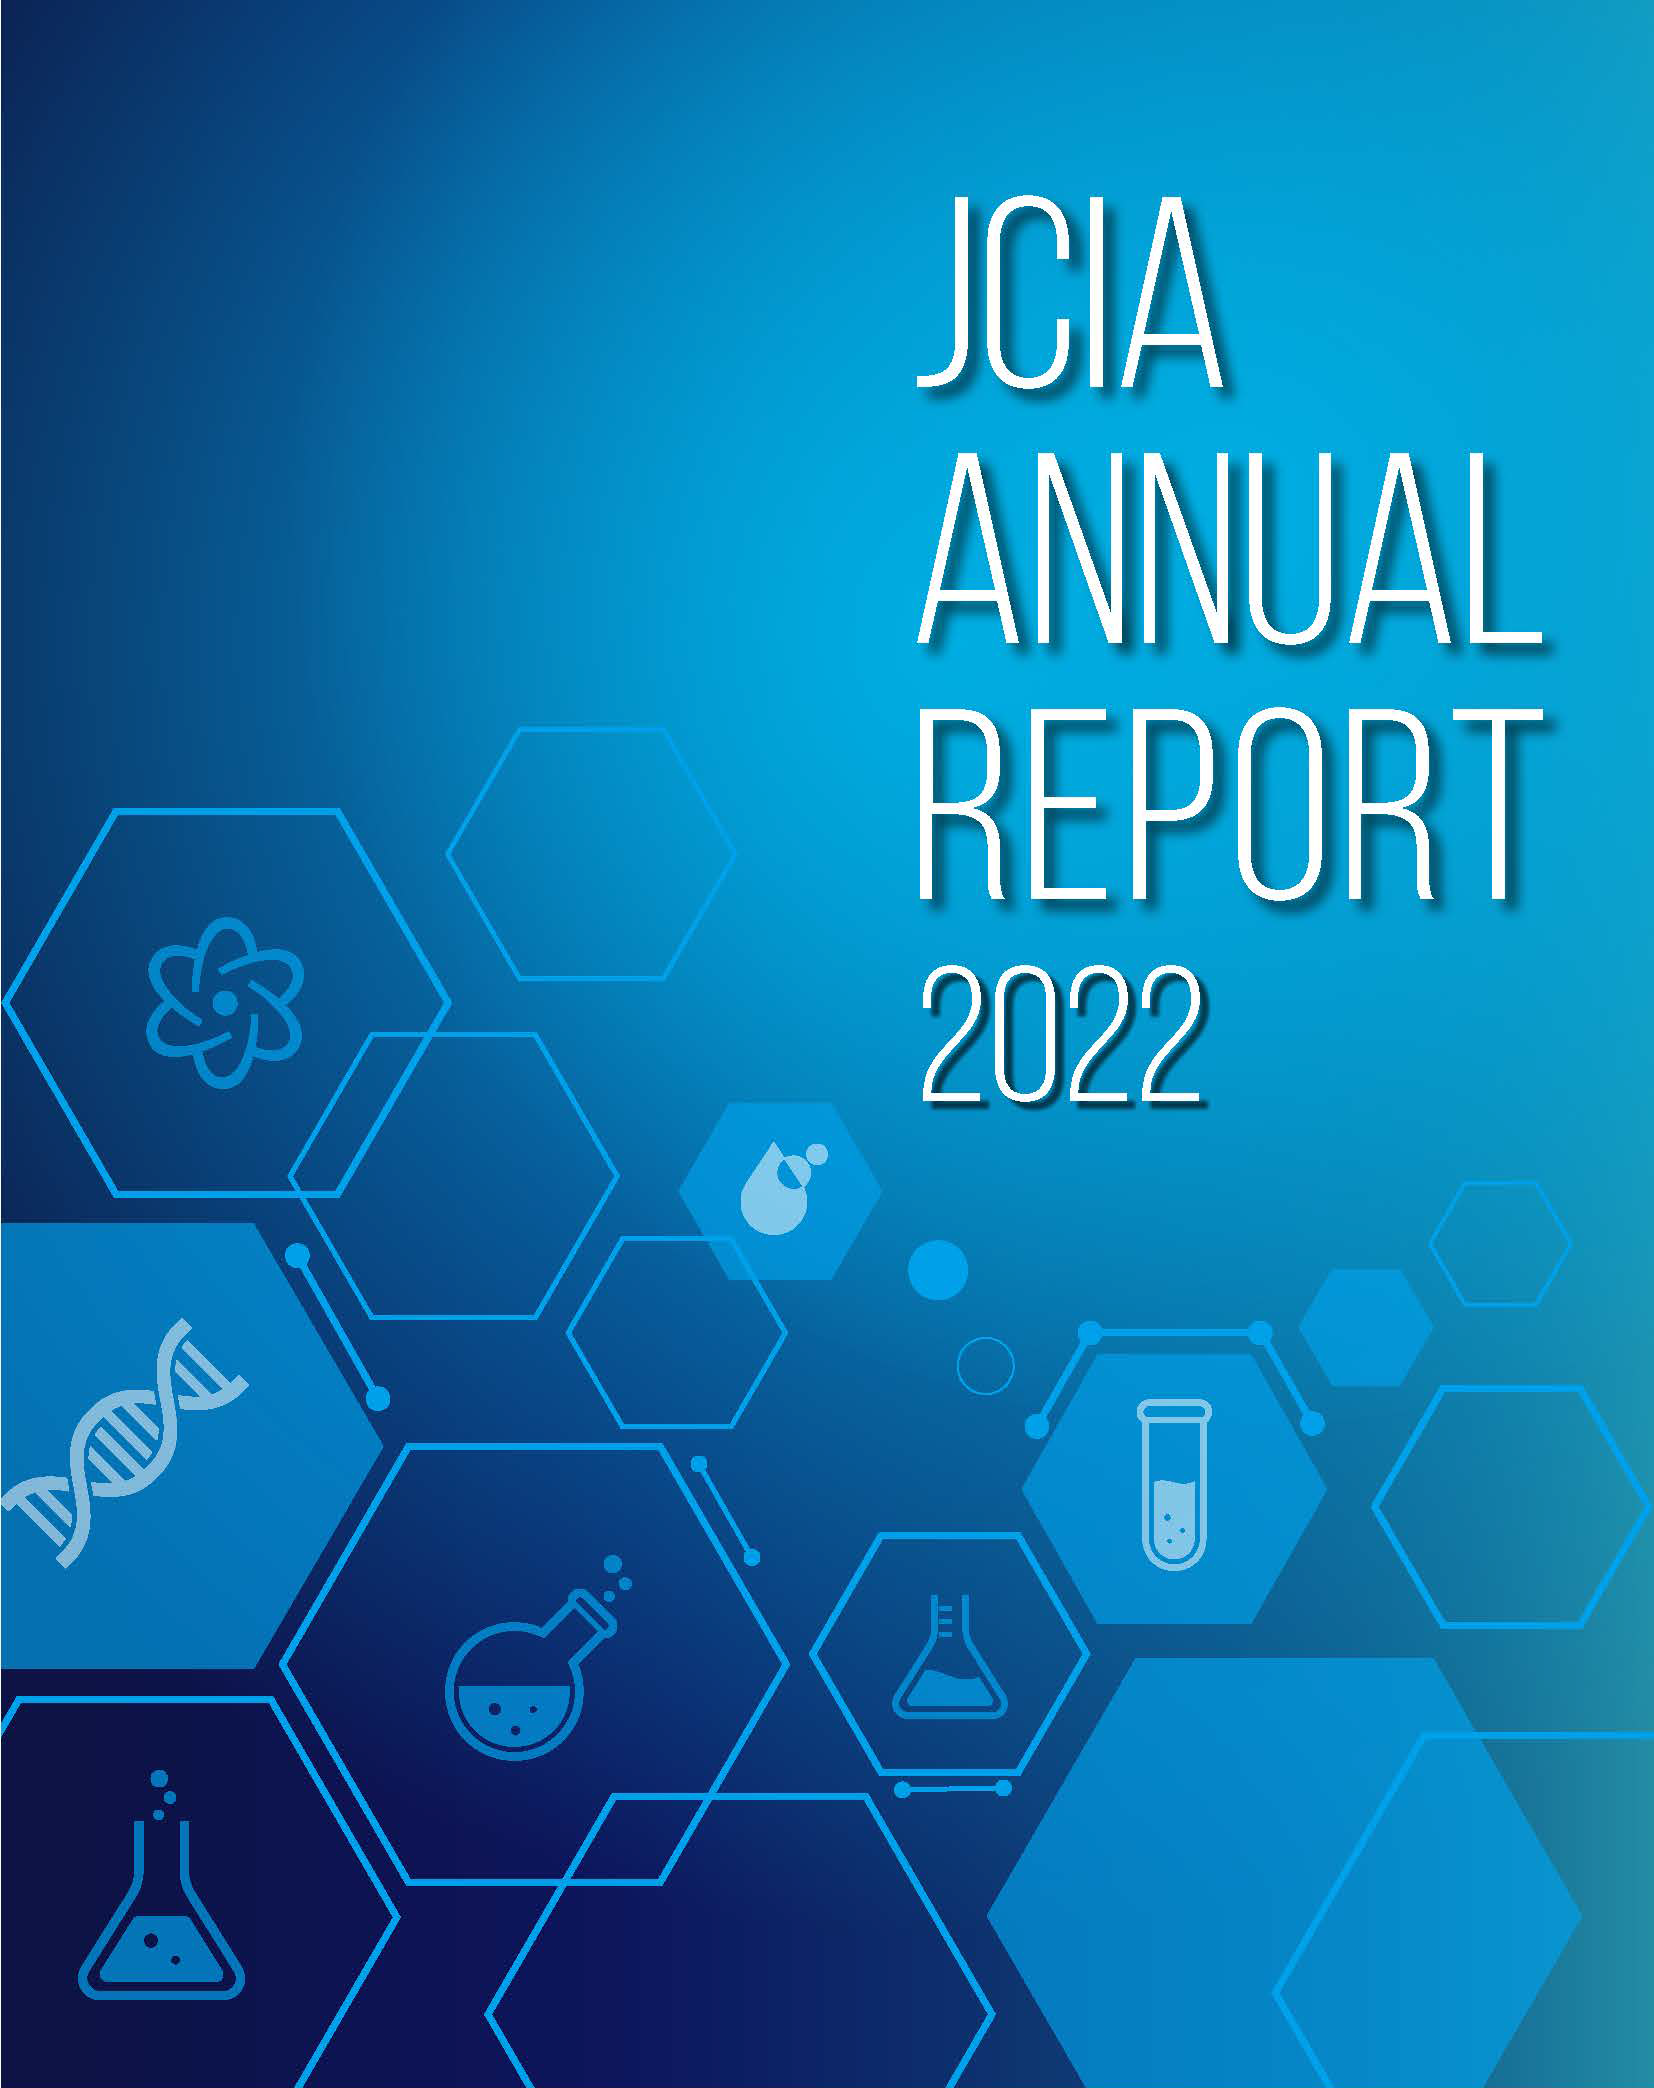 JCIA Annual Report 2022